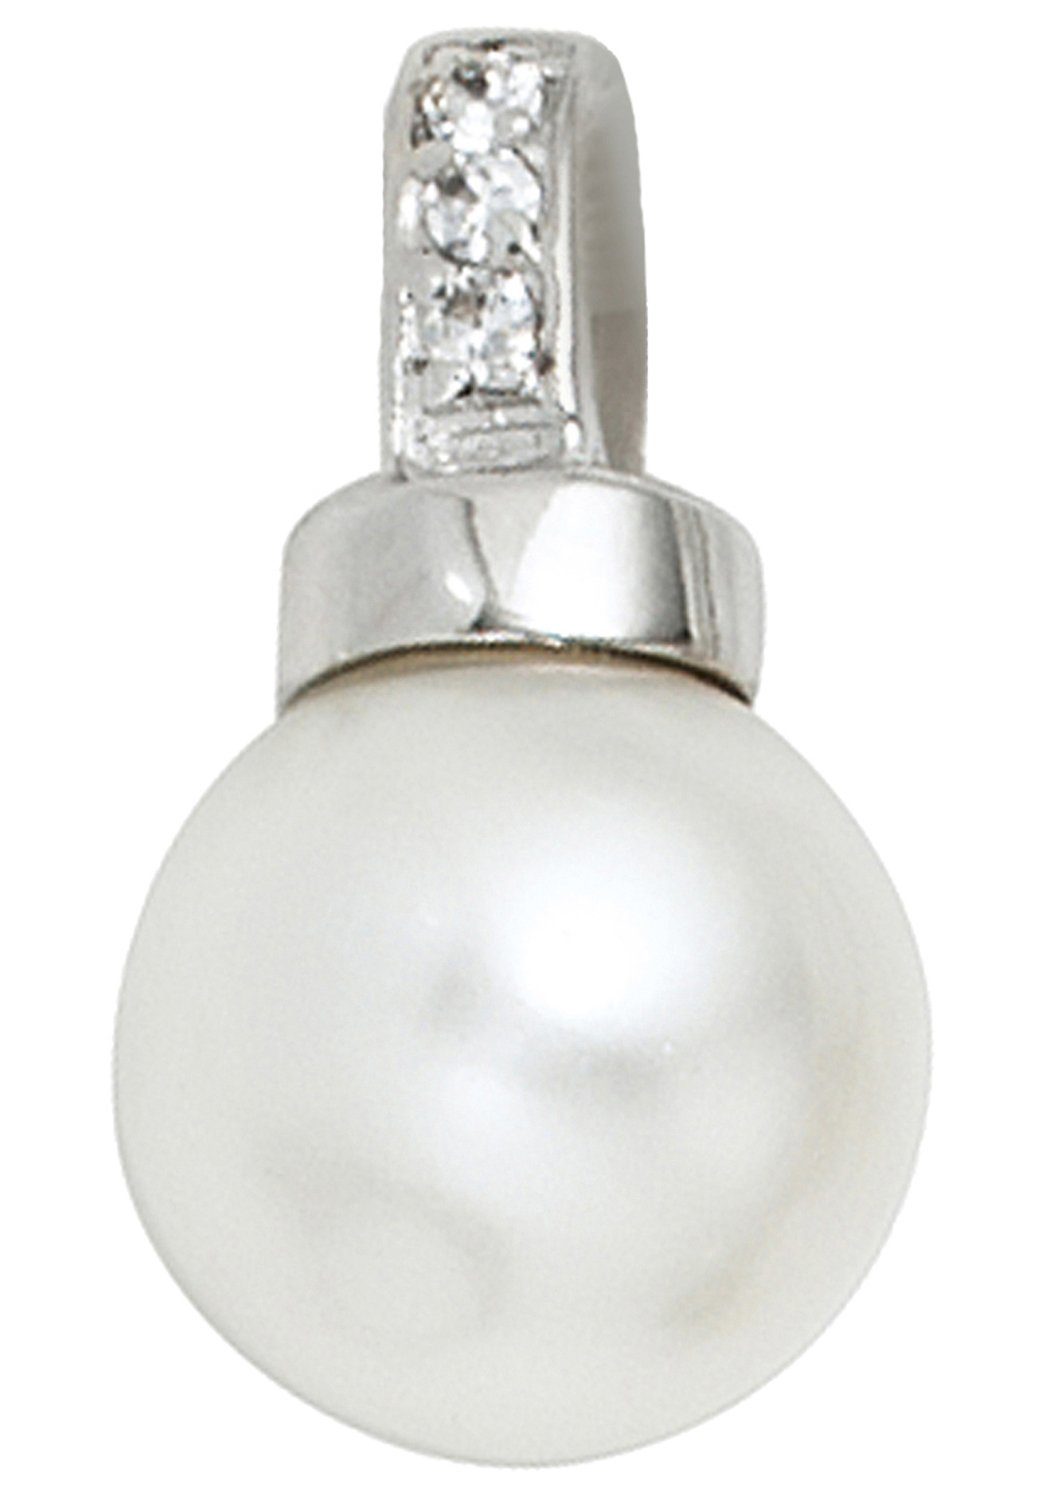 JOBO Perlenanhänger Anhänger mit Perle, 925 Silber mit synthetischer Perle  und Zirkonia, Höhe ca. 18,6 mm, Breite ca. 10,2 mm, Tiefe ca. 10,3 mm | Kettenanhänger